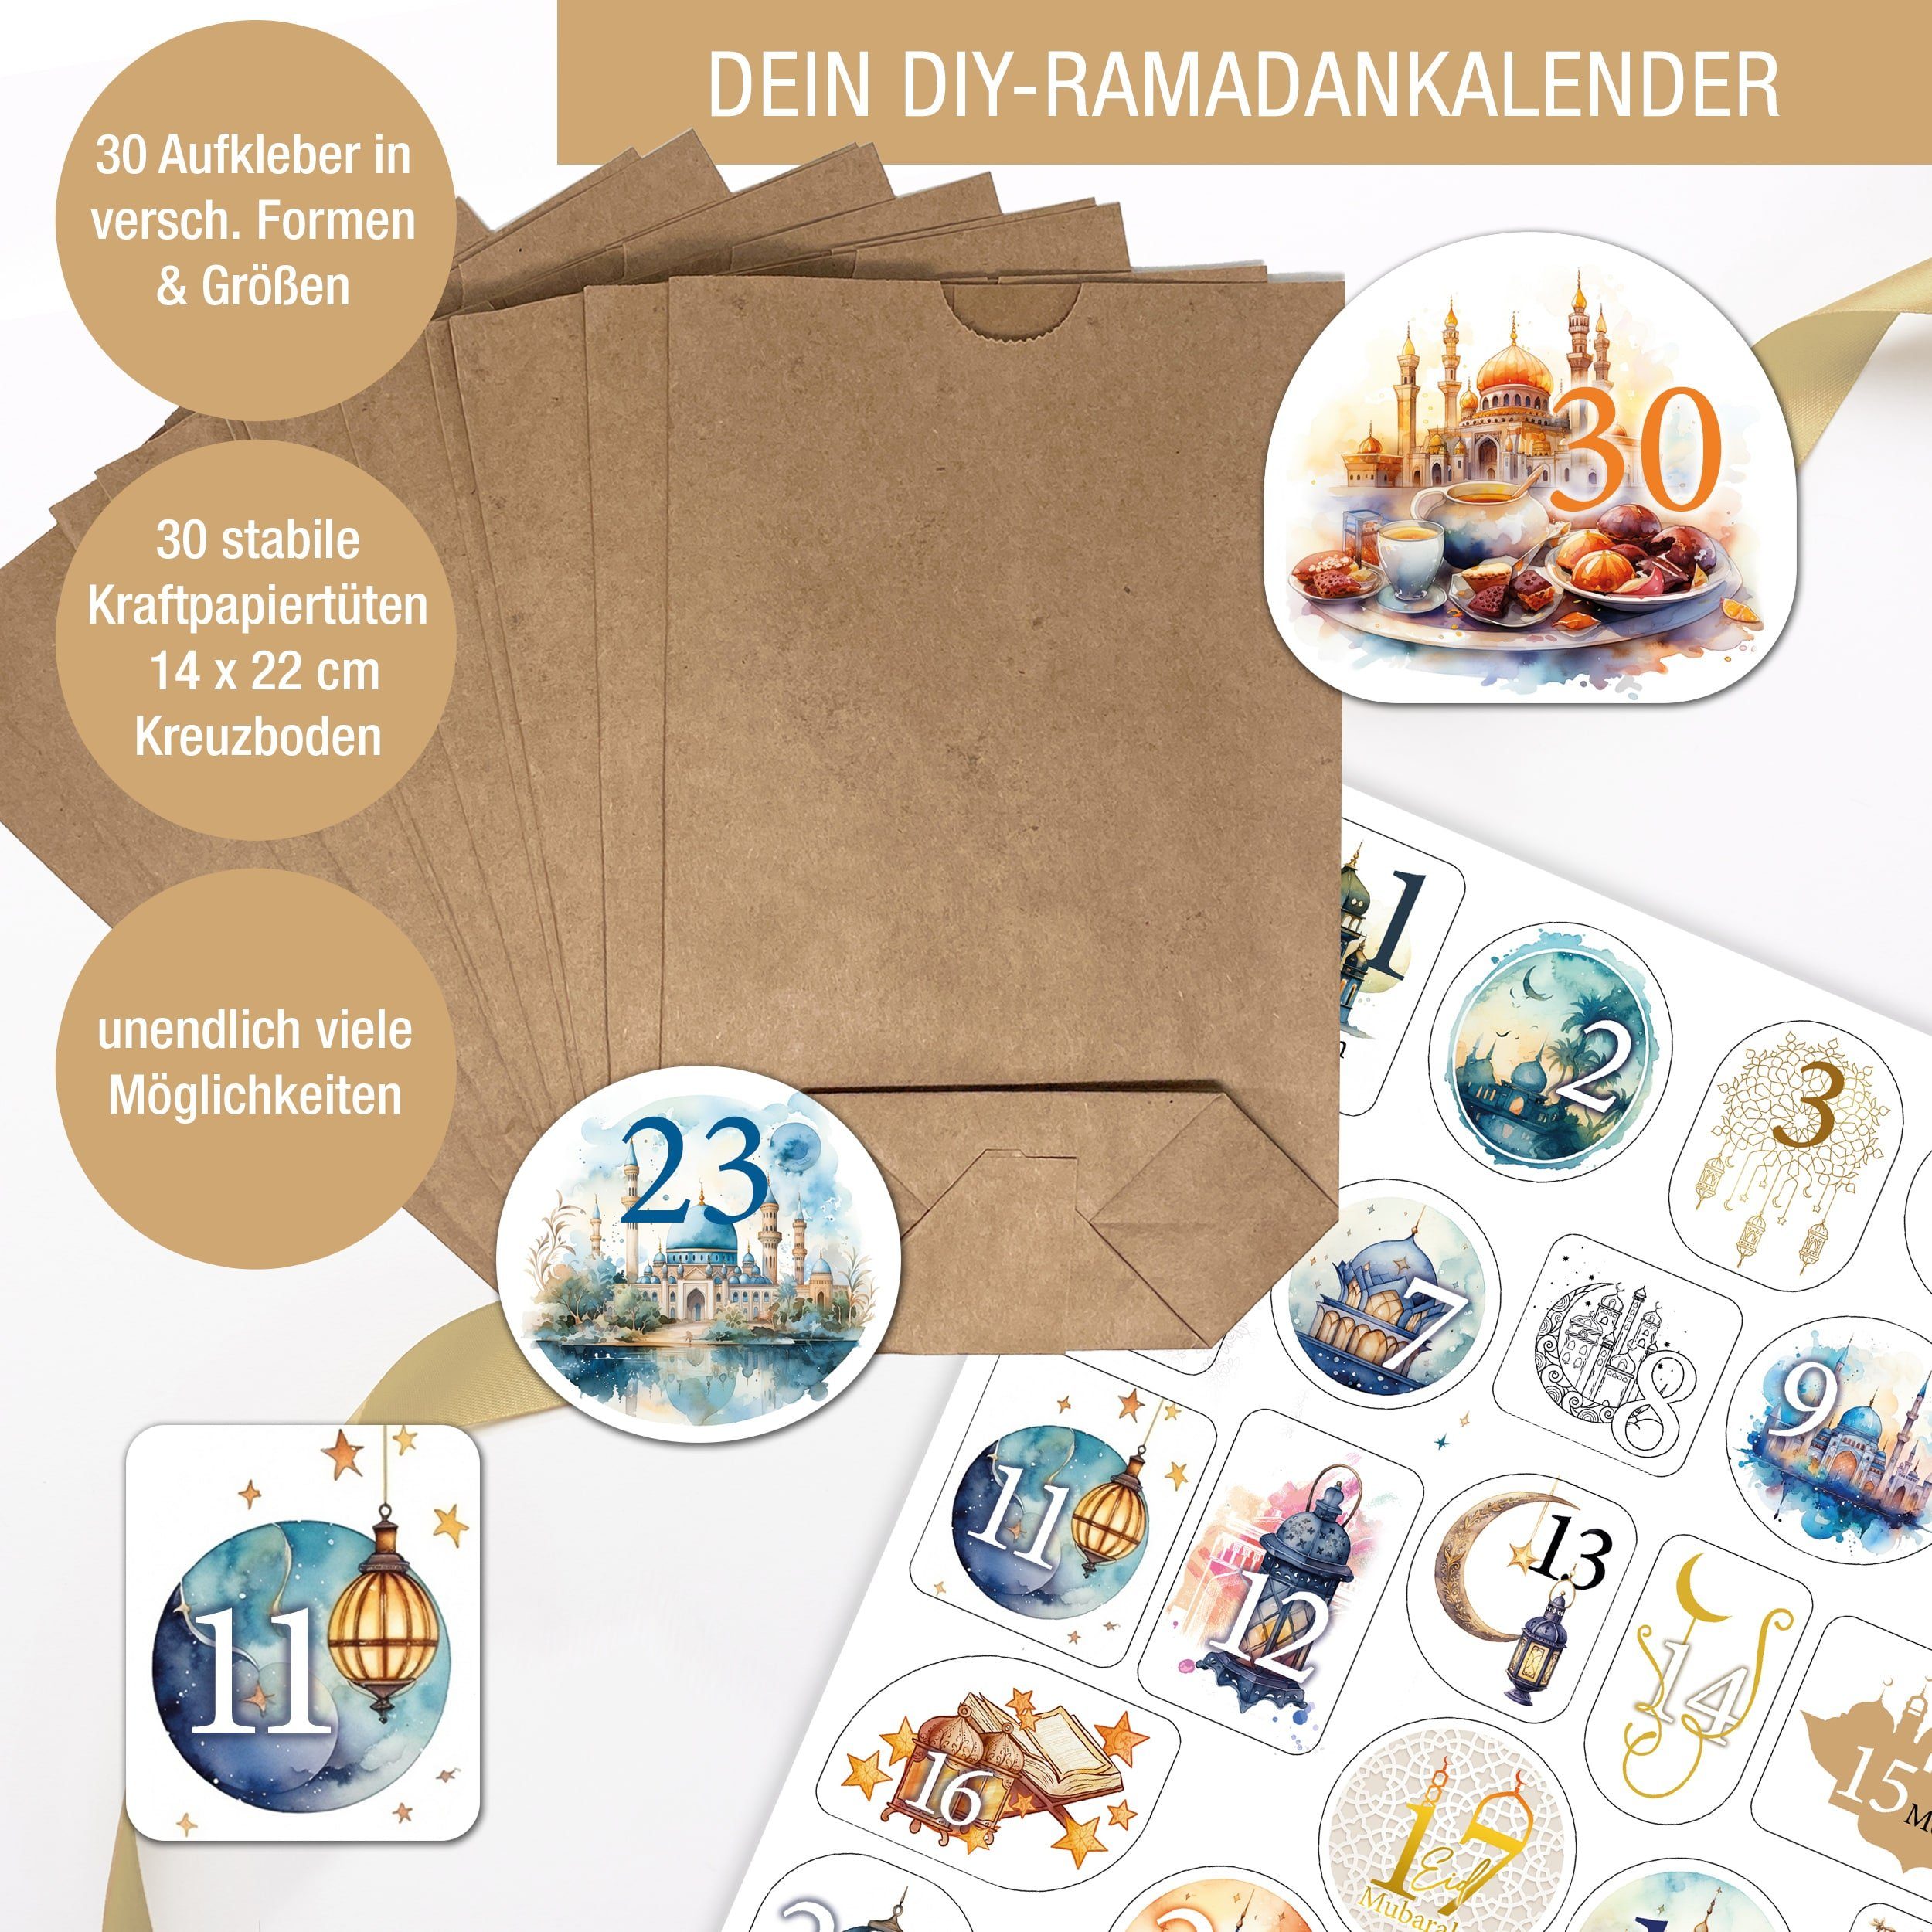 https://i.otto.de/i/otto/720f8d41-3eab-544f-bab6-4165fb372dcb/tobja-befuellbarer-adventskalender-ramadan-kalender-kinder-diy-set-30-tueten-sticker-set-ramadan-tueten-zum-befuellen.jpg?$formatz$